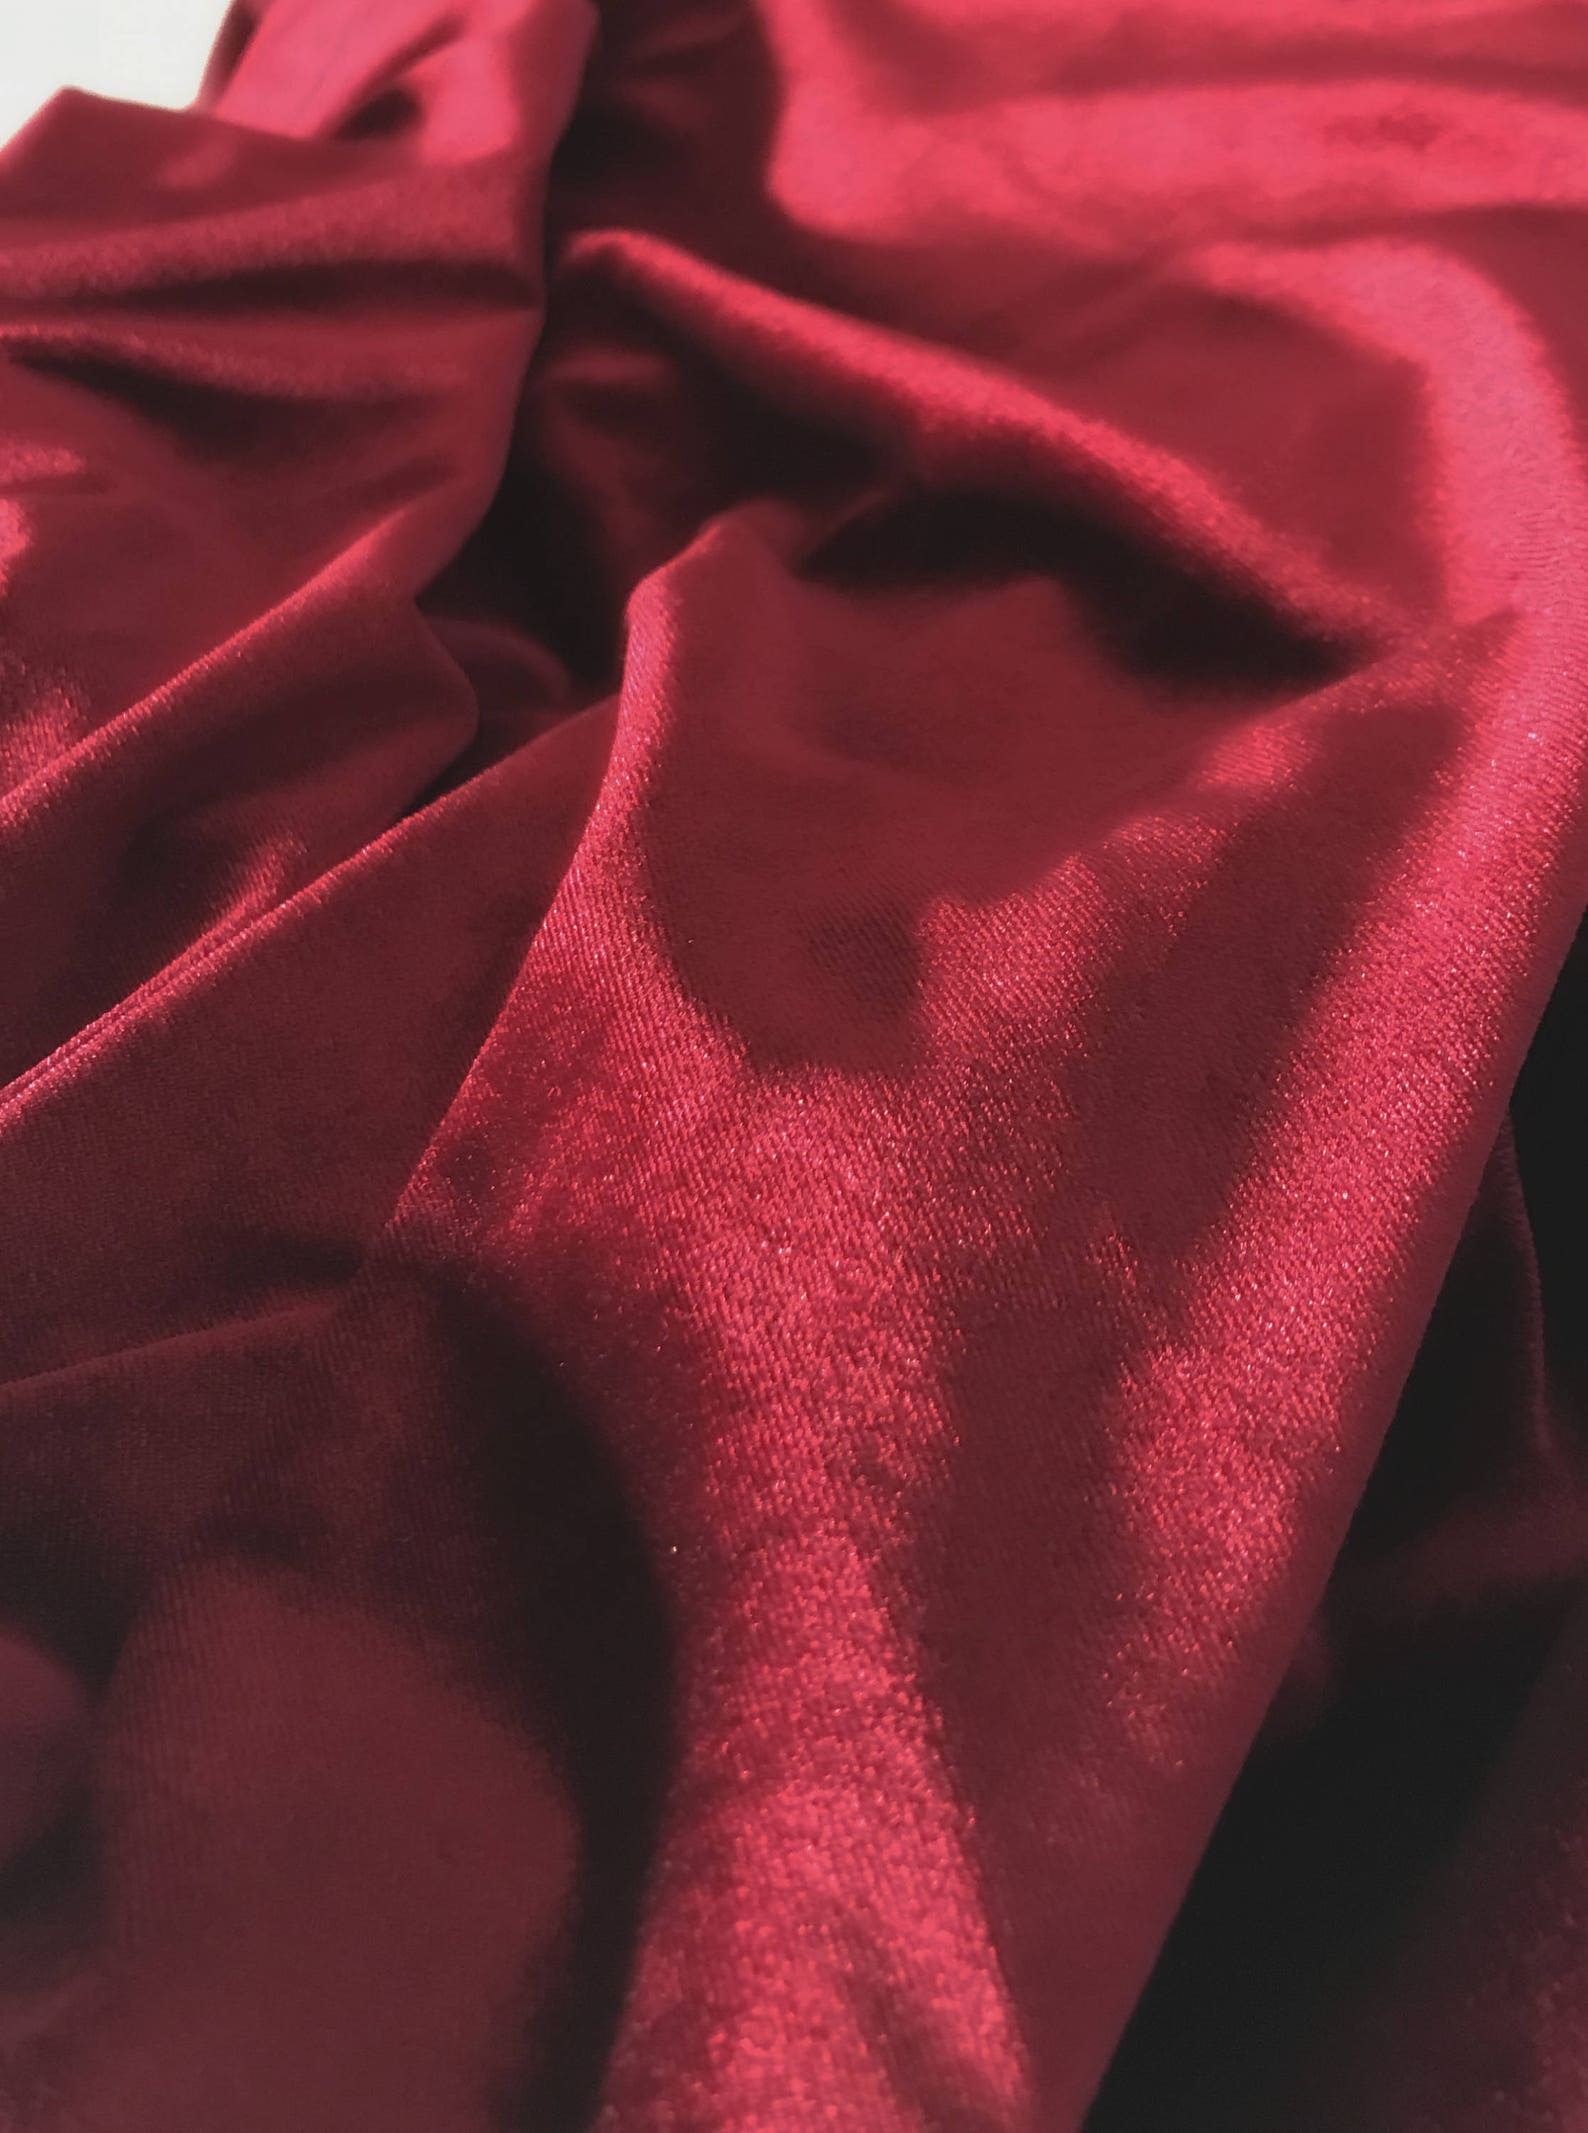 Burgundy Velvet Fabric Burgundy Red Velvet Fabric By The Yard | Etsy